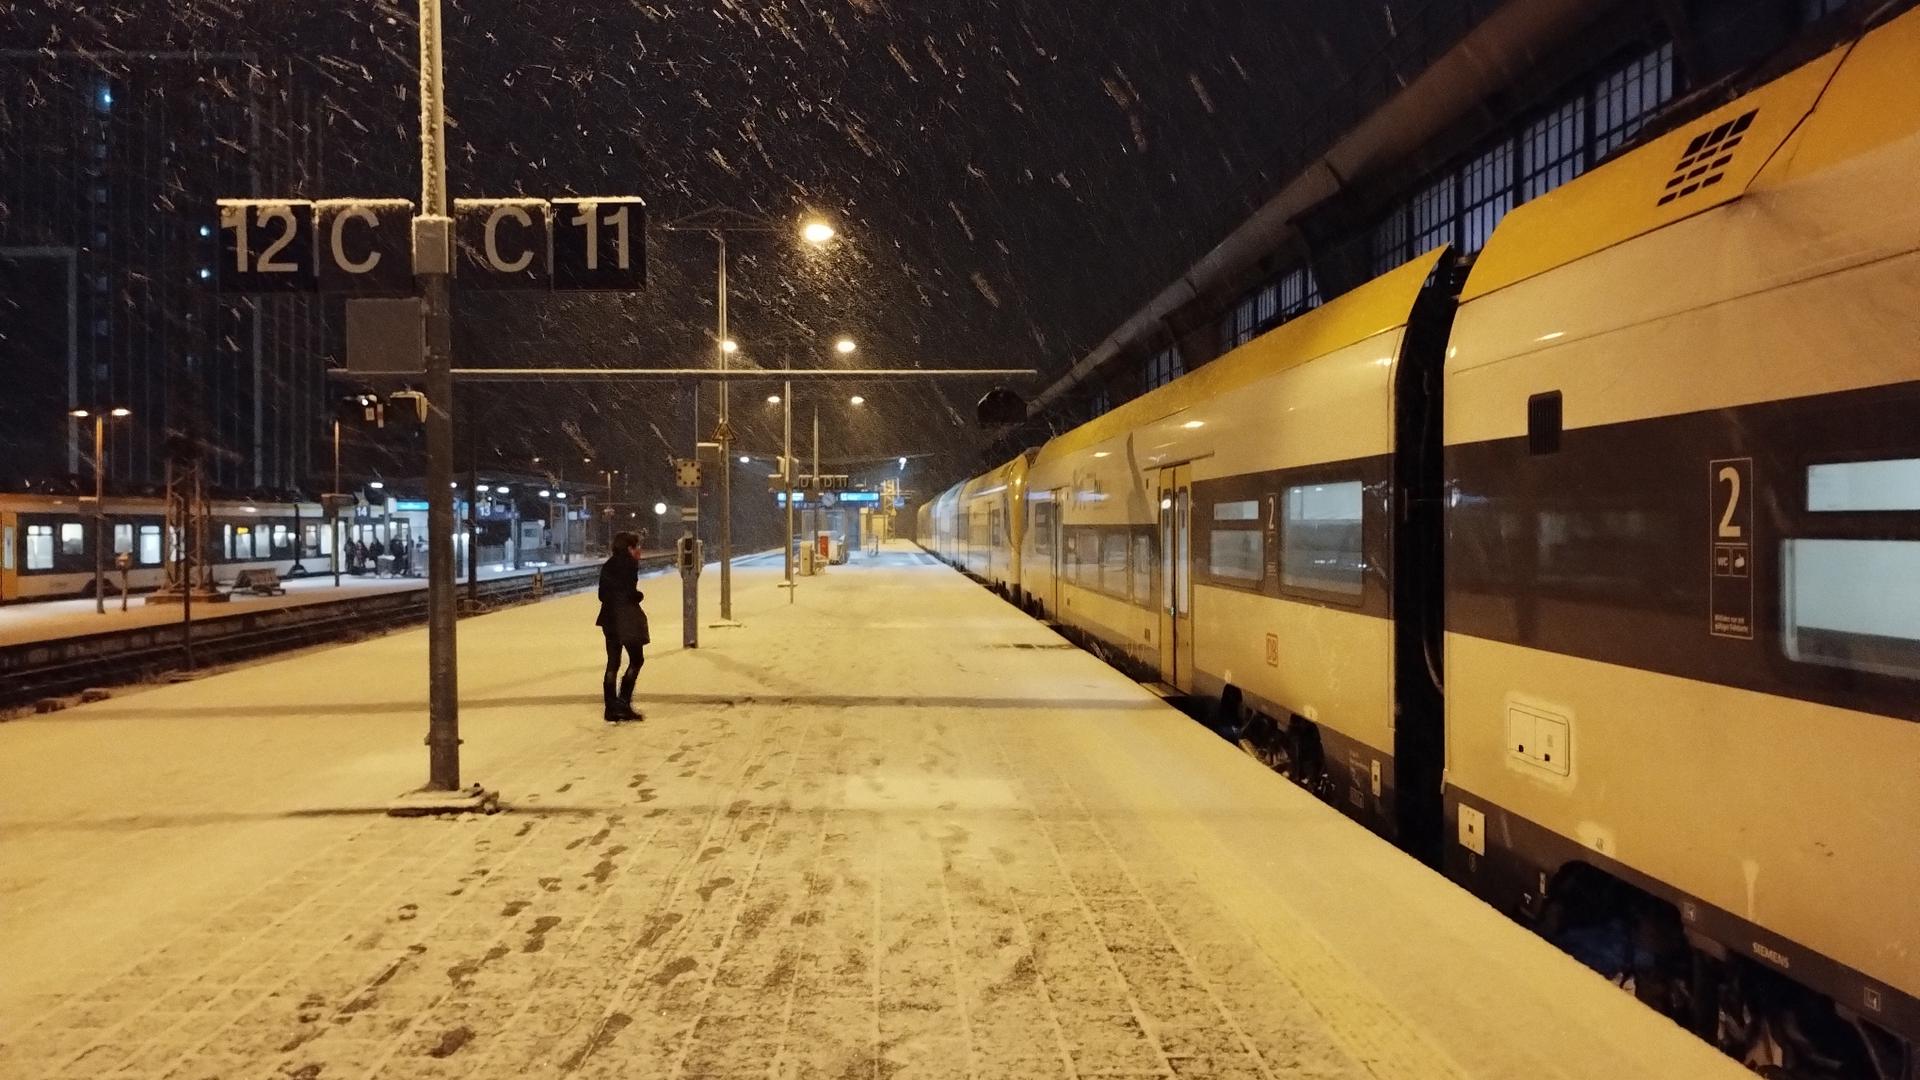 De erneute Schneefall hat Karlsruhe in ein Winter-Wonderland verwandelt.